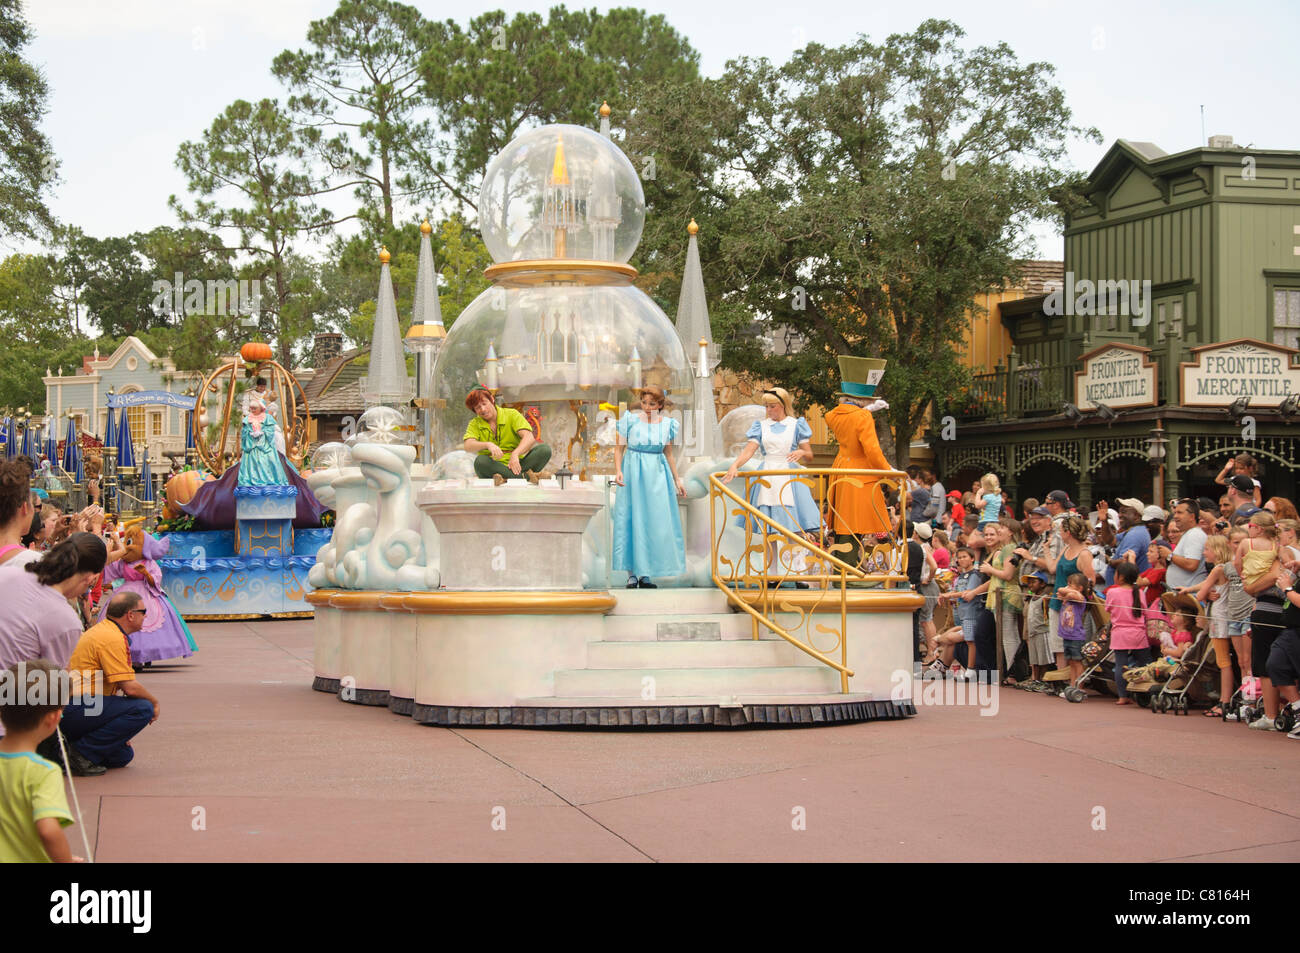 Les parcs de Walt Disney World Resort le royaume magique célébrer un rêve viennent vrai défilé Peter pan wendy alice au pays des merveilles Banque D'Images